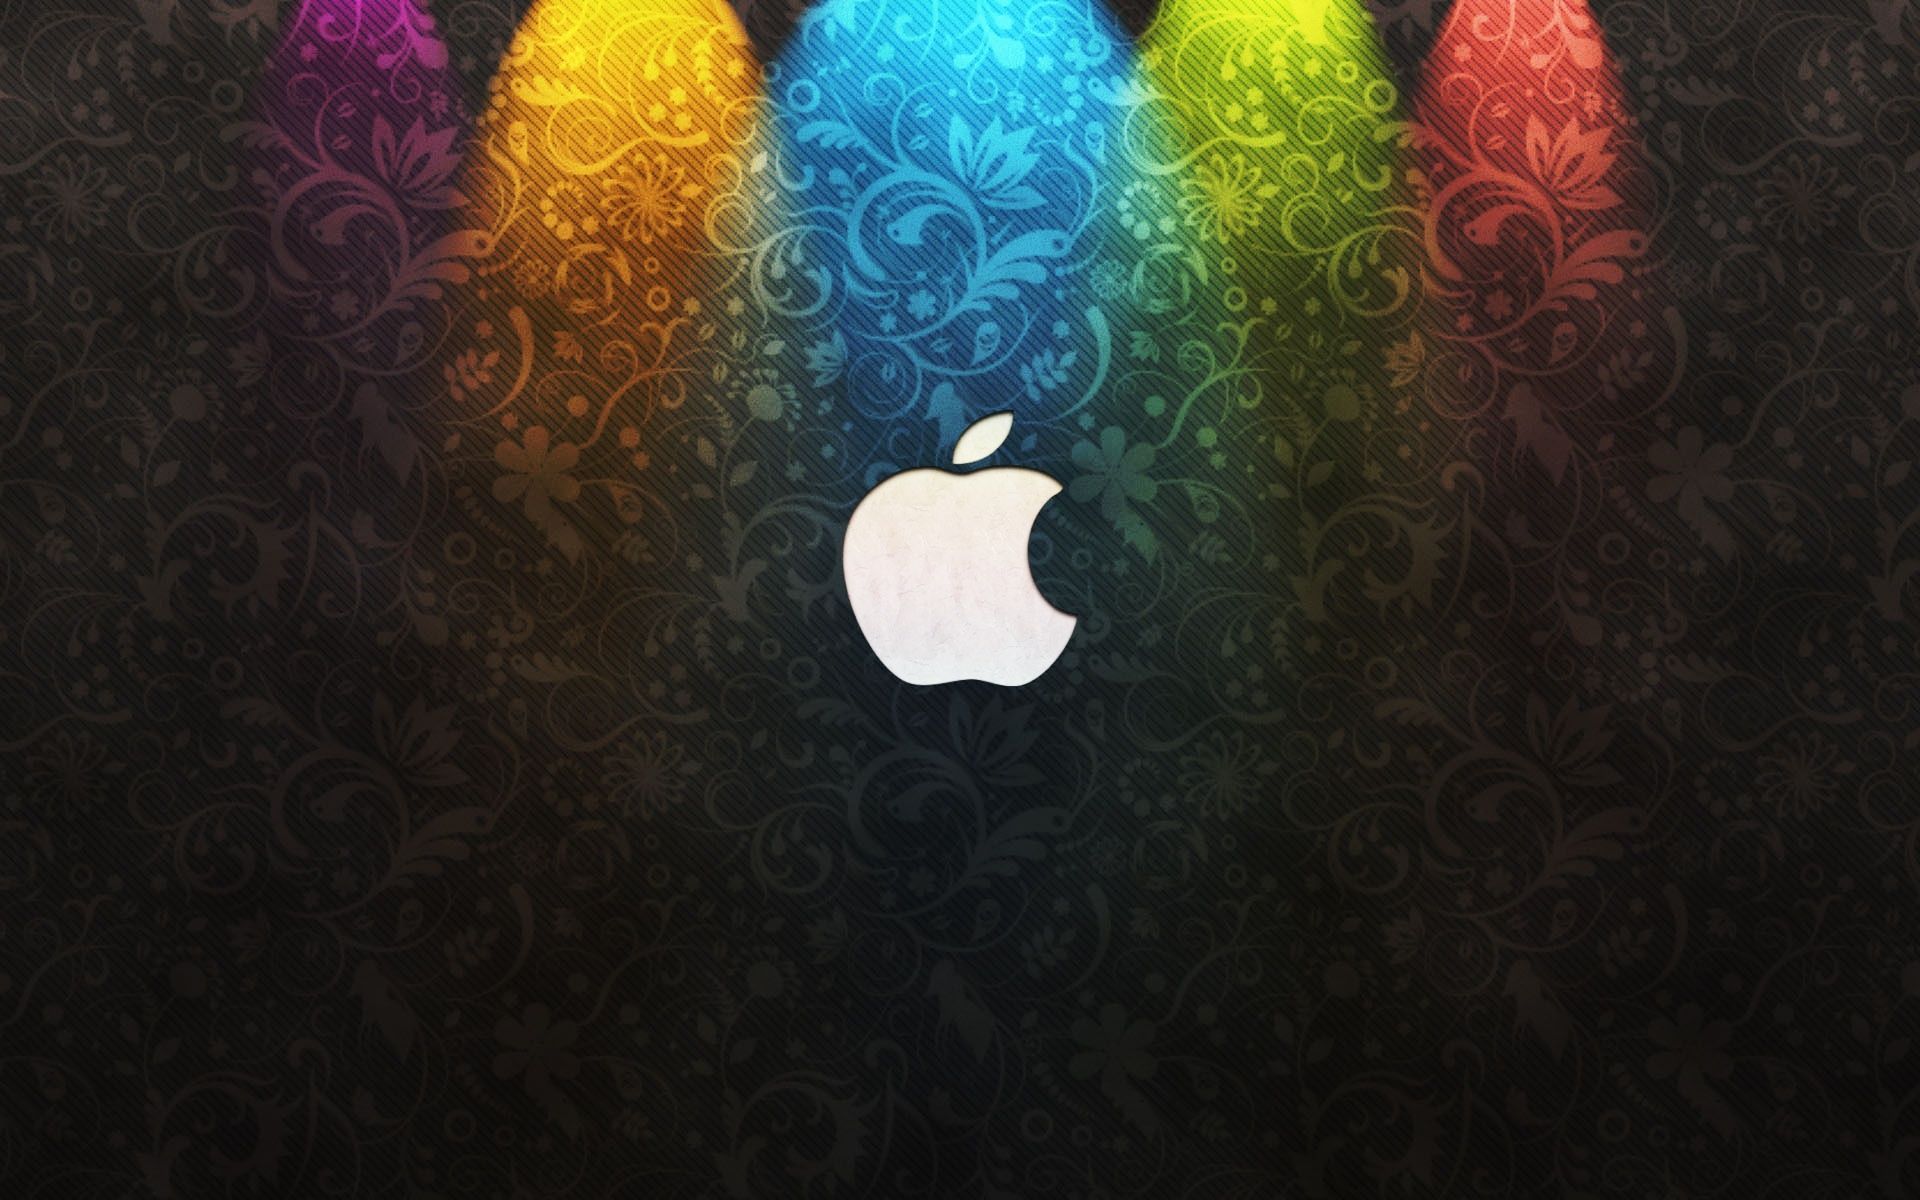 Apple Logo For Wallpaper